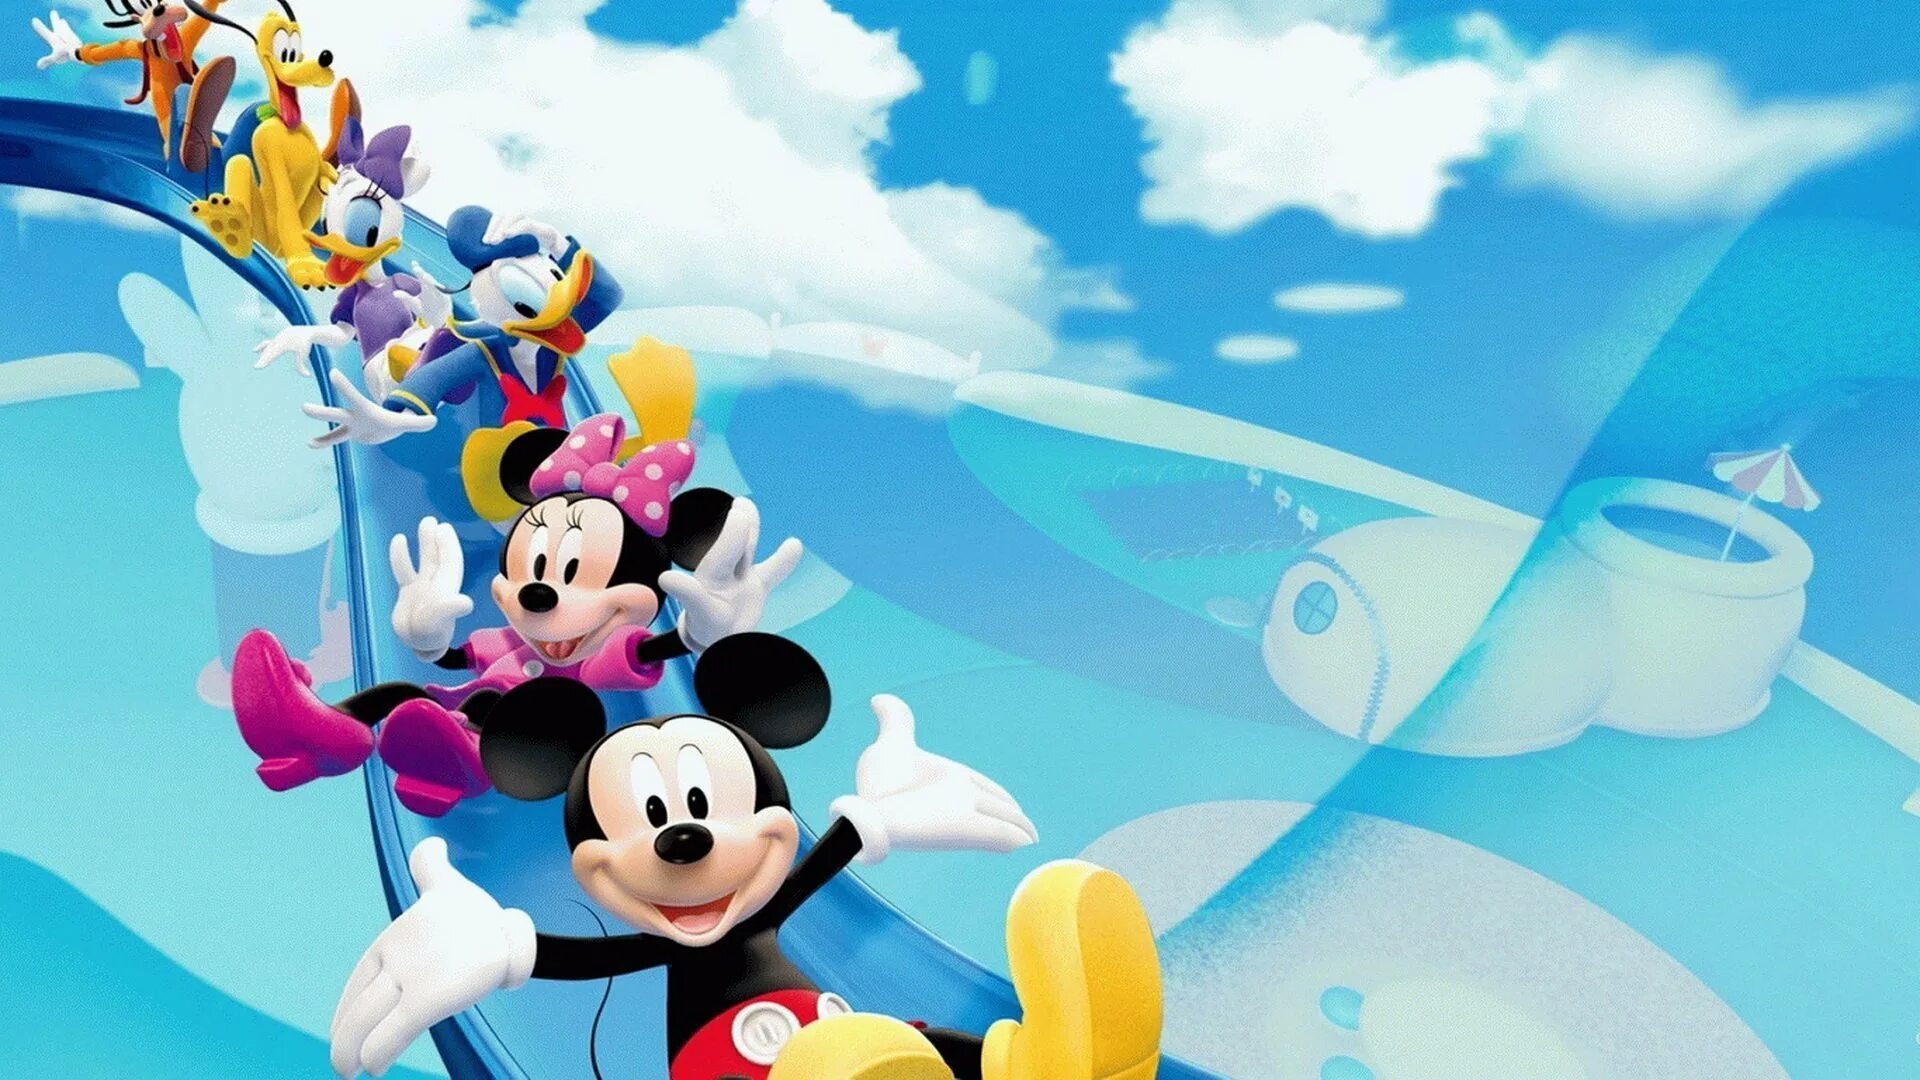 Тема дисней. Disney Mickey Mouse Clubhouse. Фоны для фотографий детские. Яркие детские фоны. Детский фон для афиши.